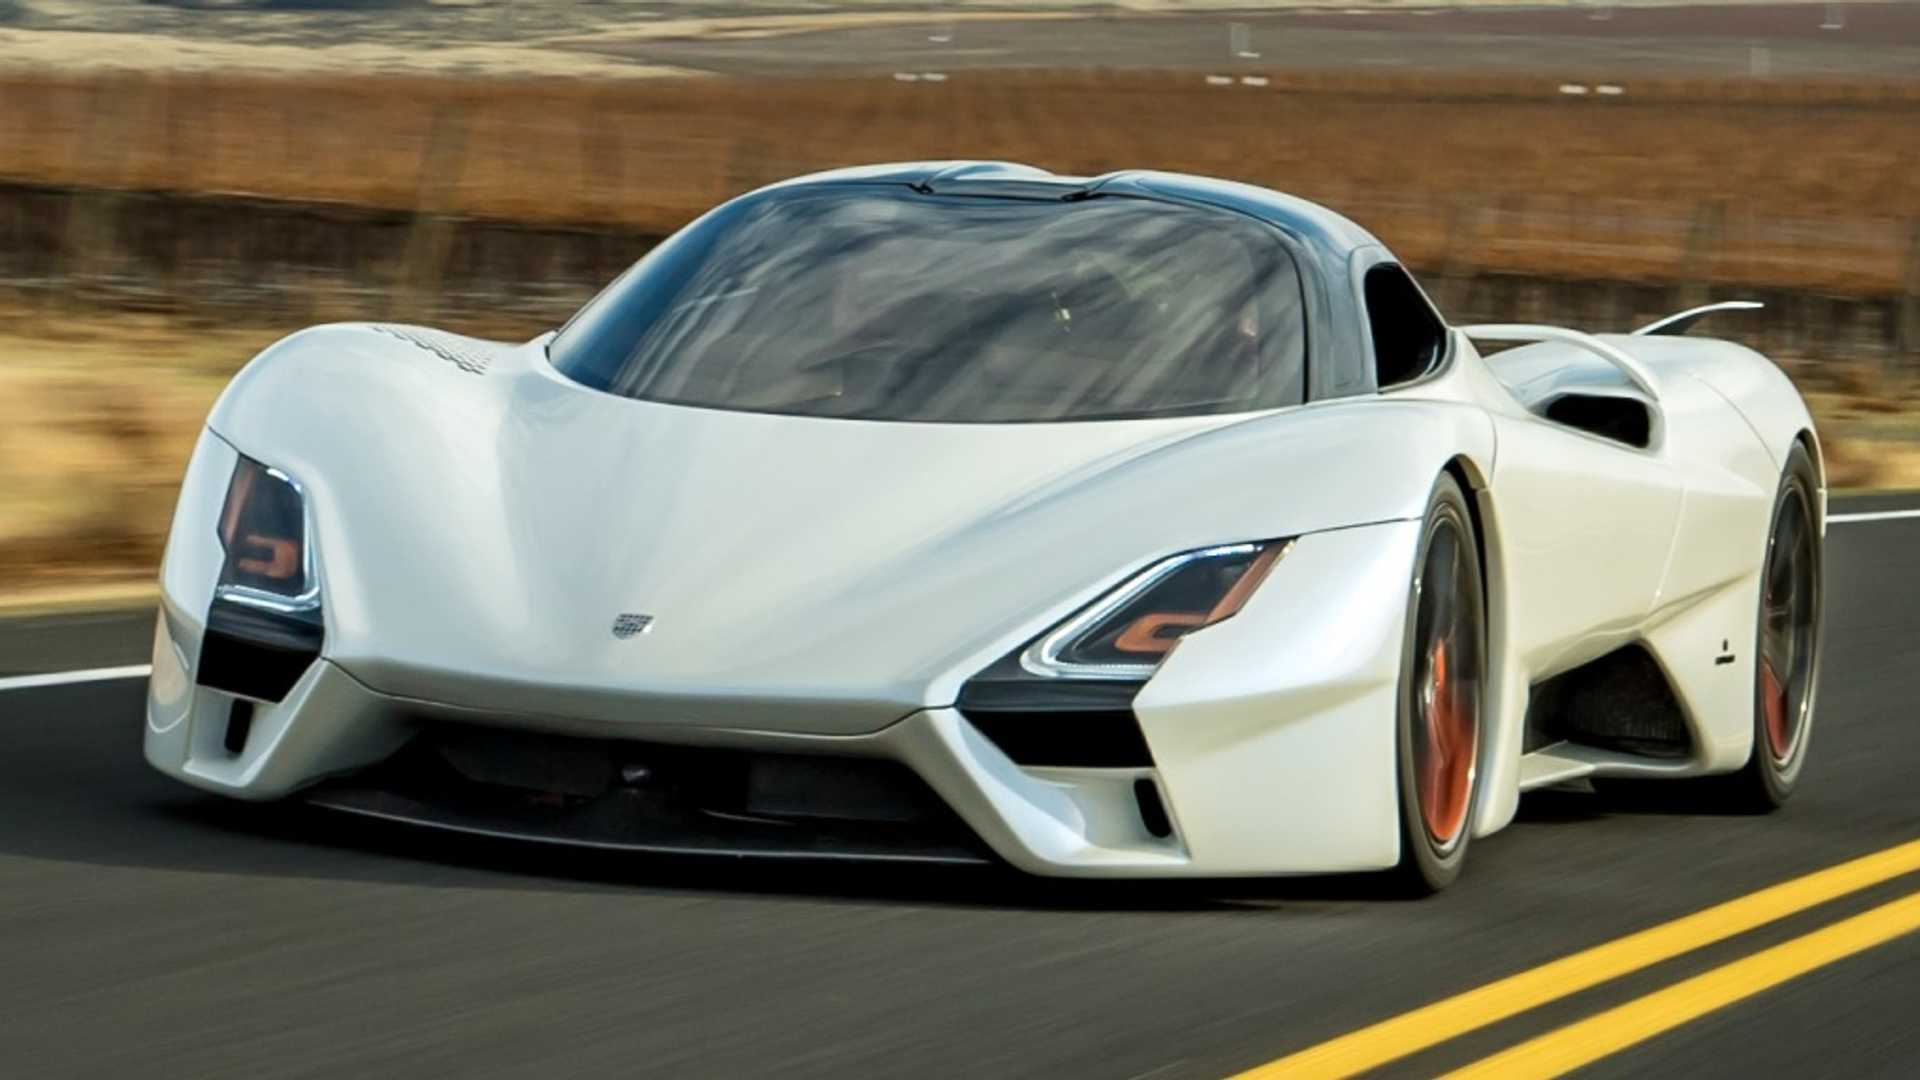 Ssc tuatara стал самым быстрым серийным автомобилем в мире - 4pda